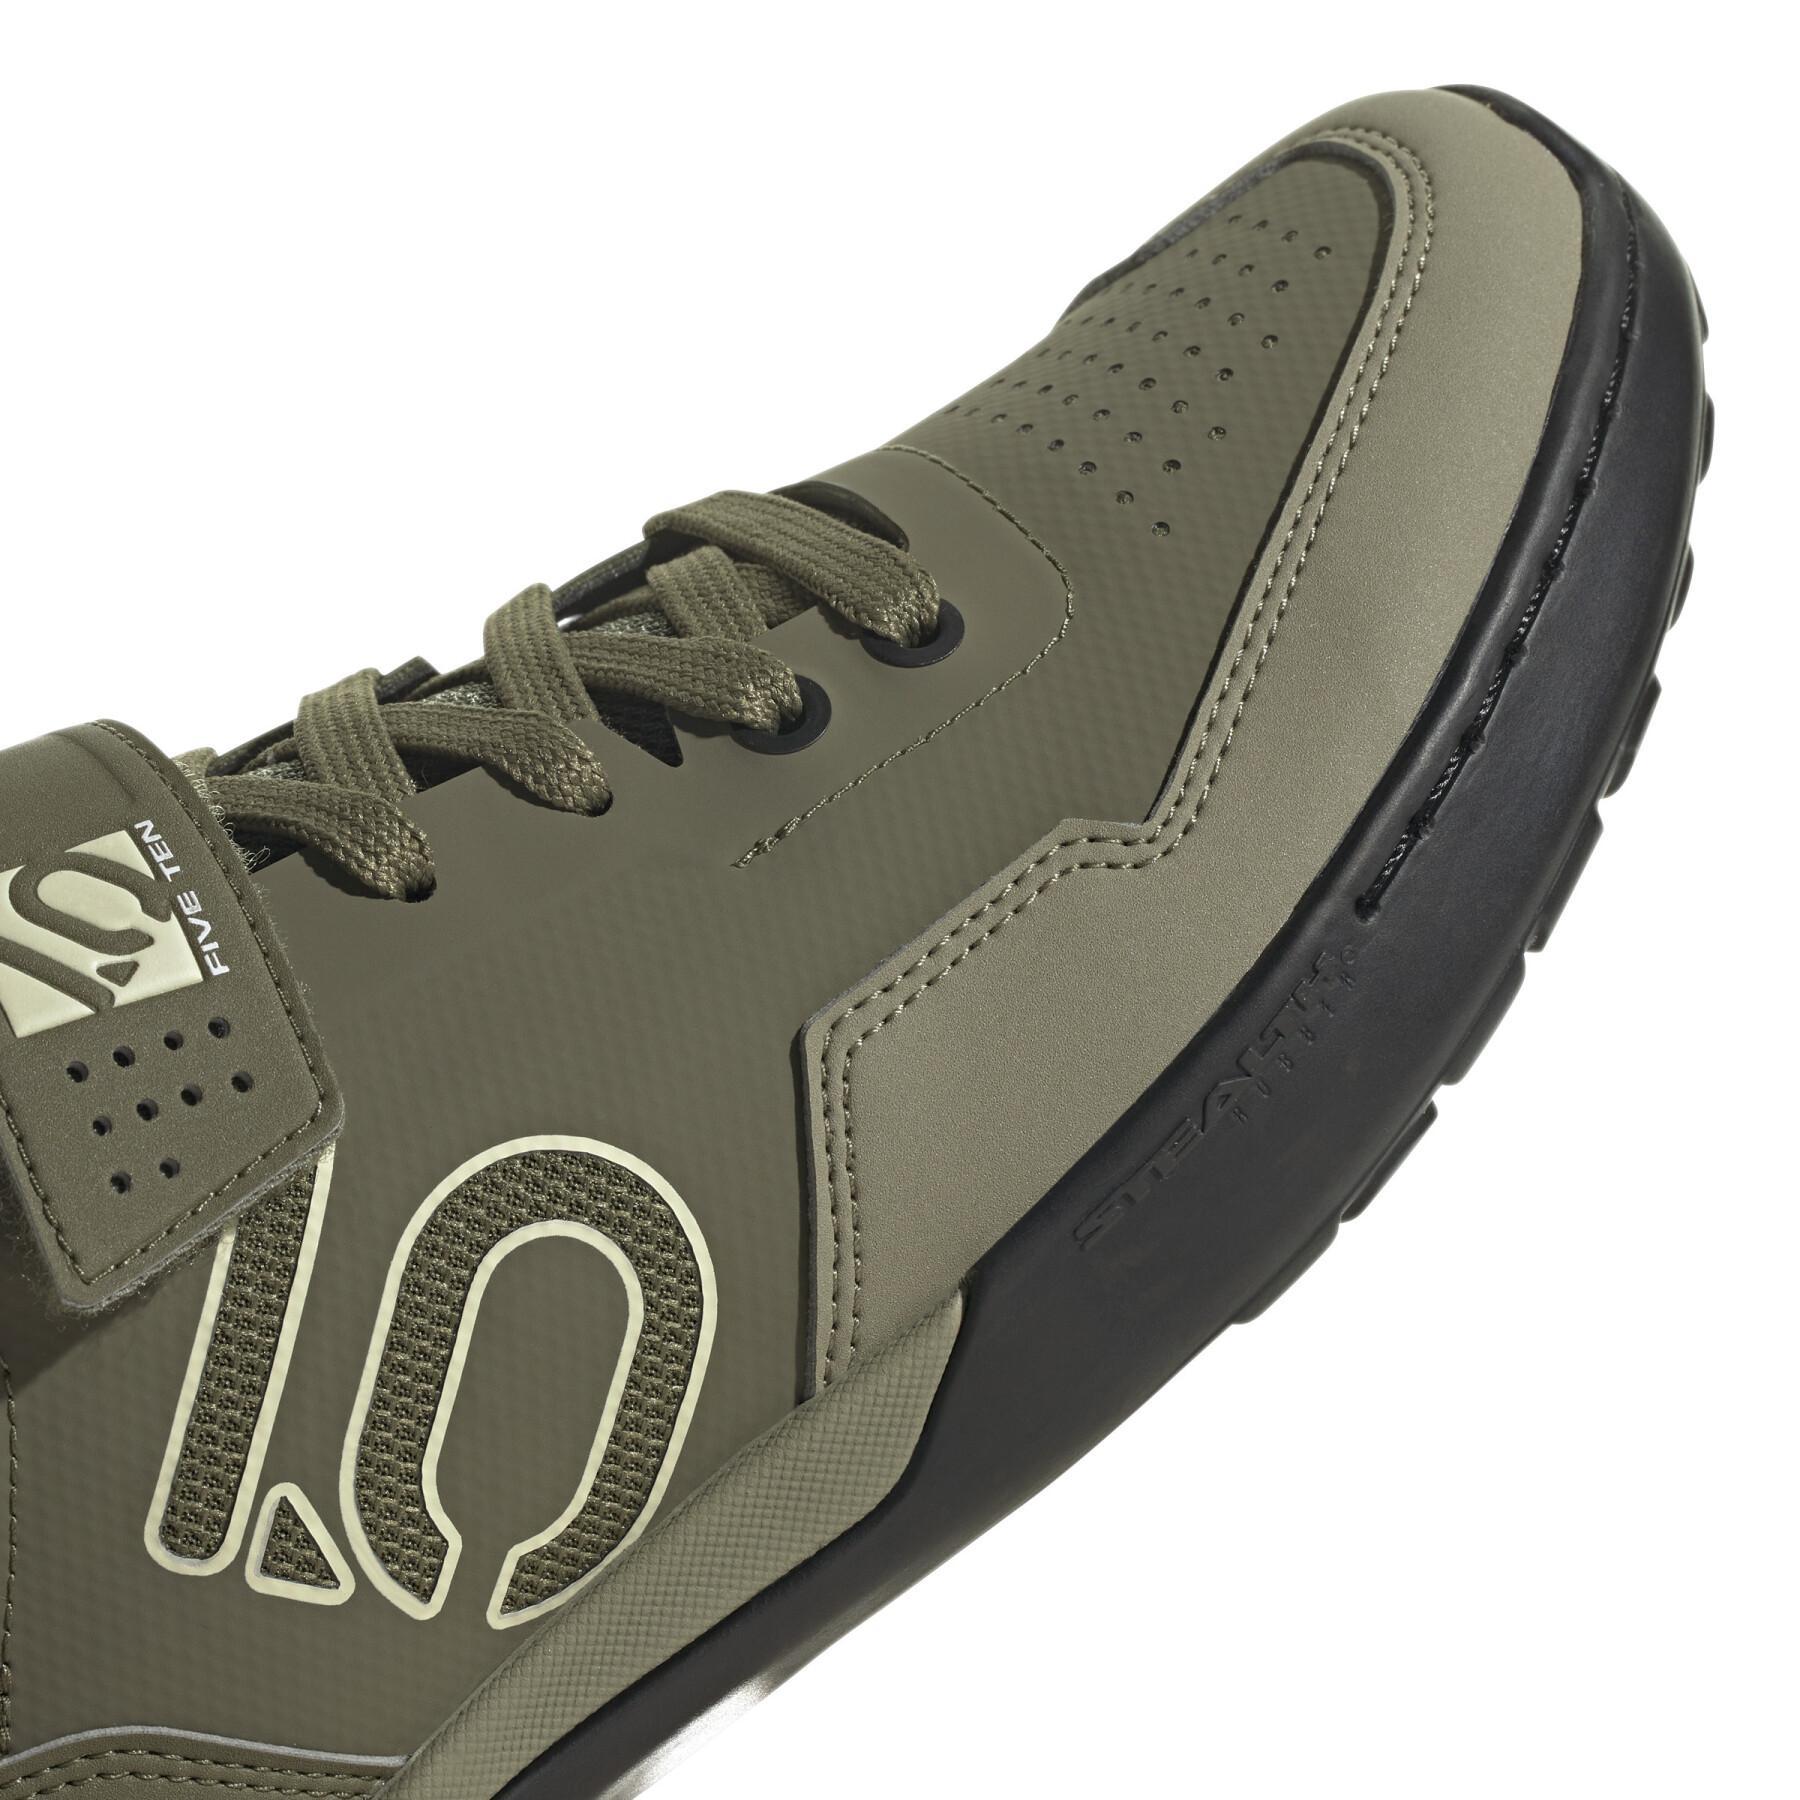 Chaussures VTT adidas 150 Five Ten Mountain Bike Kestrel